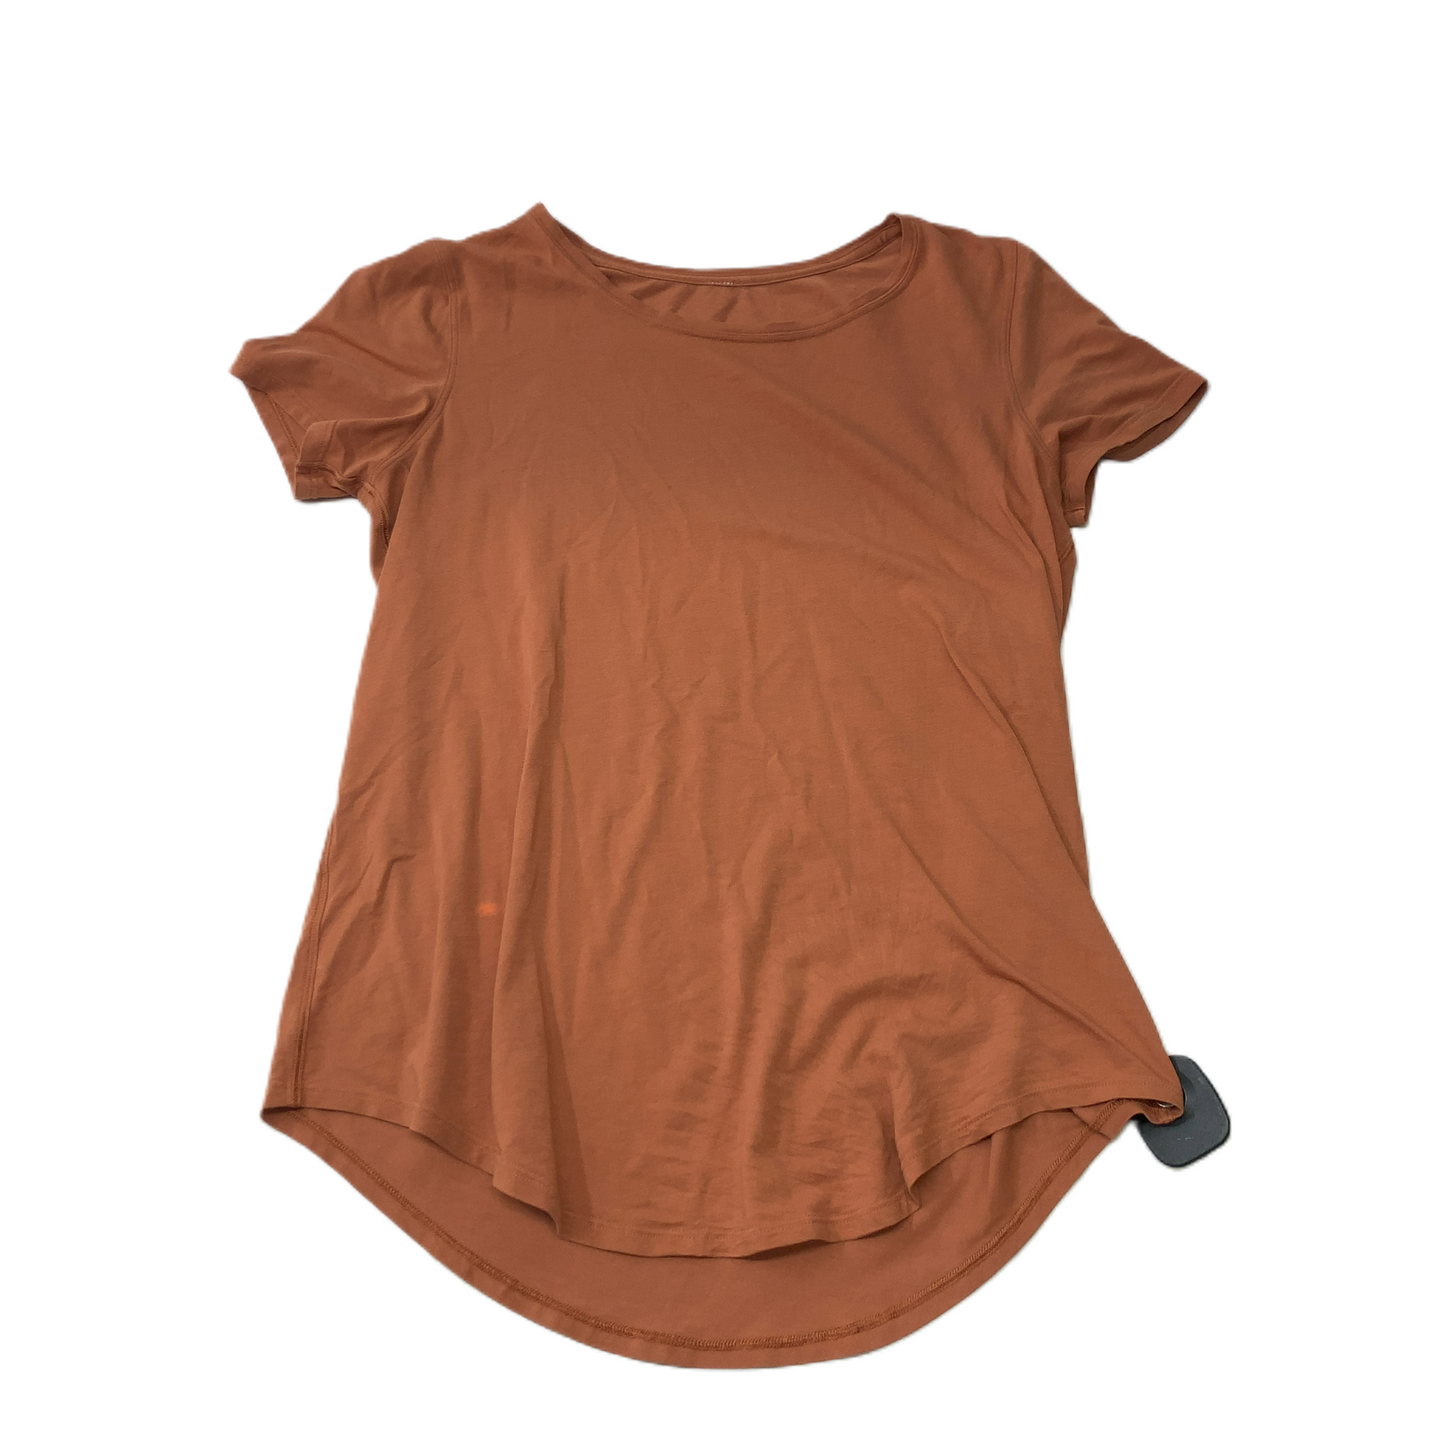 Orange  Athletic Top Short Sleeve By Lululemon  Size: M